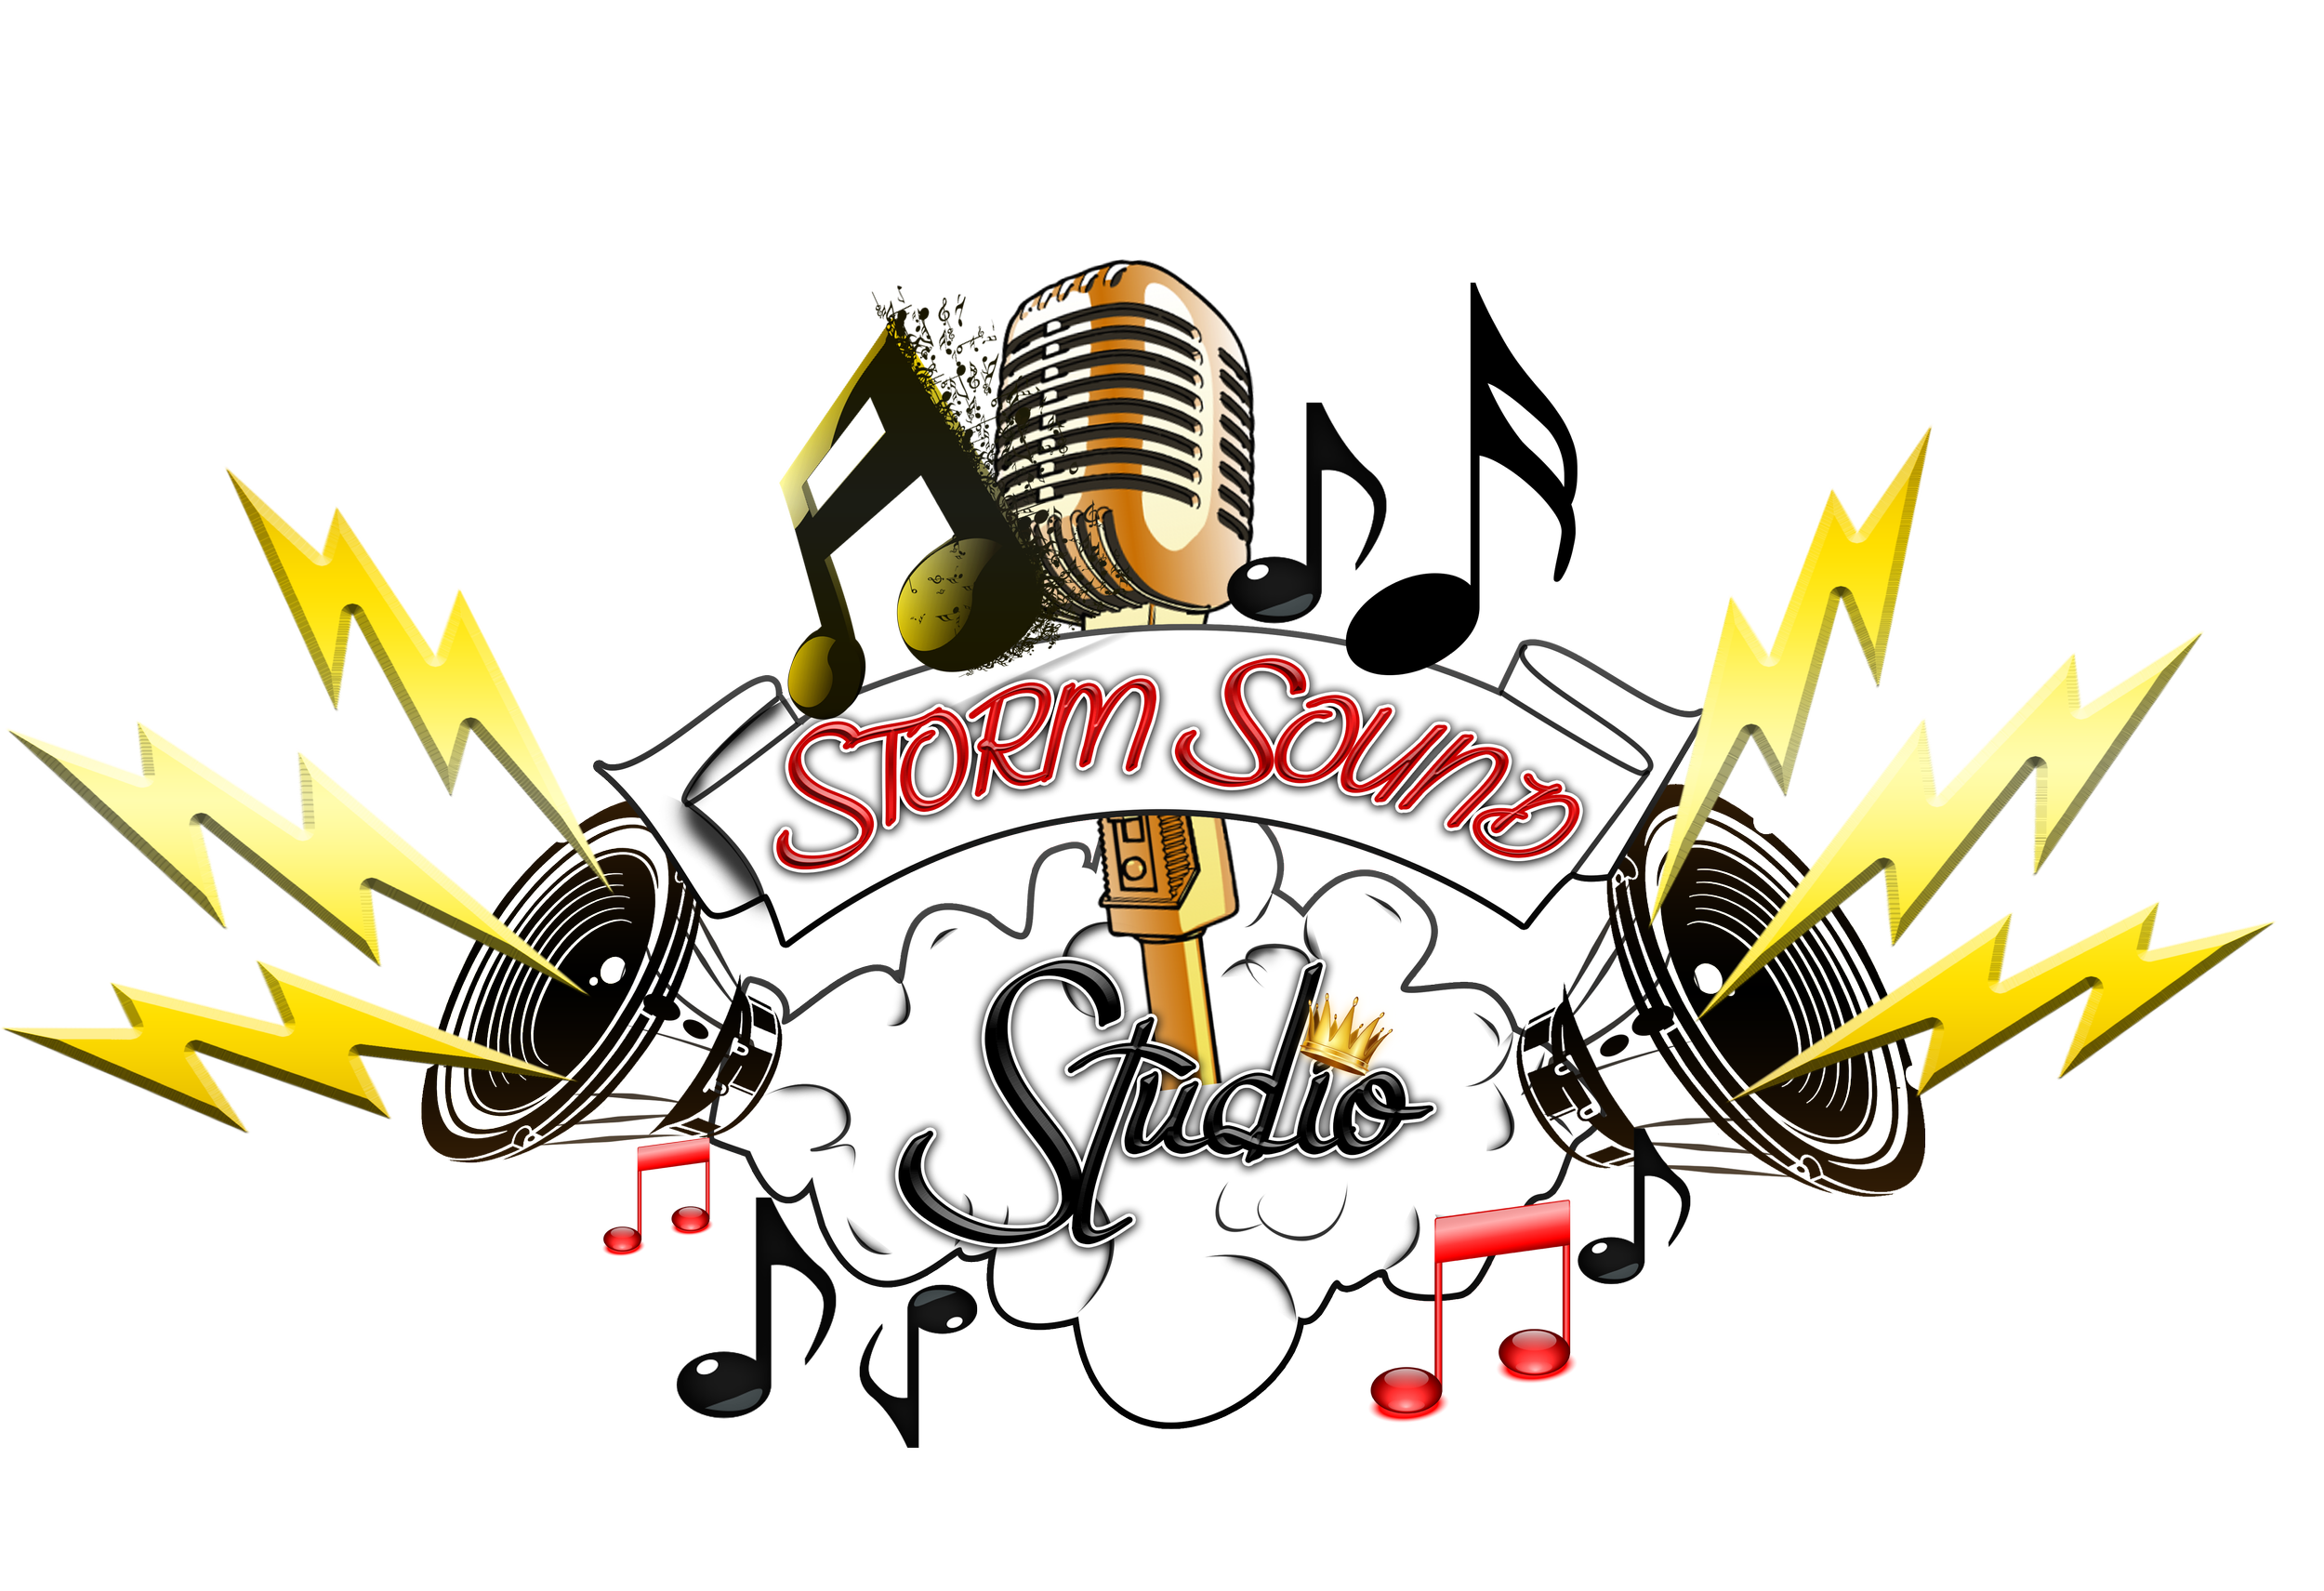 Storm Music Studio - Download